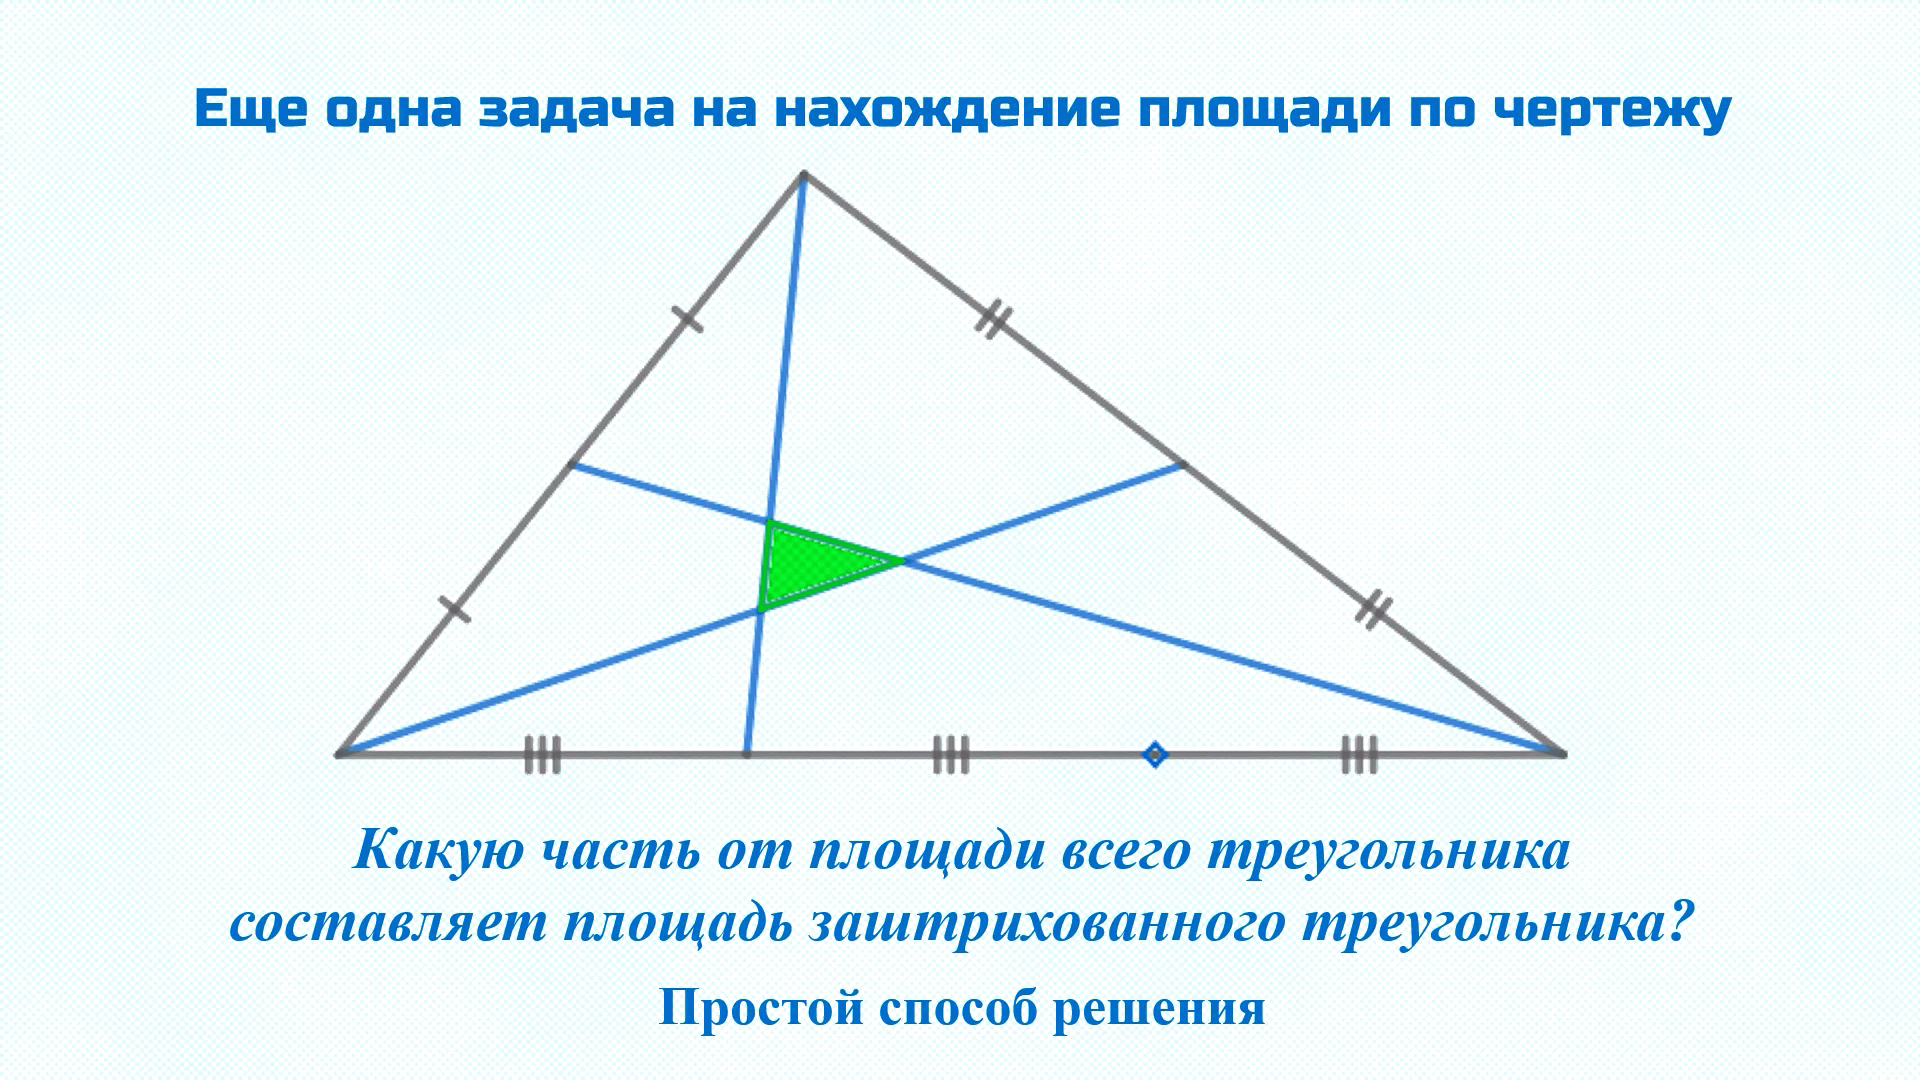 Тупоугольном треугольнике высота равна 20 найдите. Равносторонний тупоугольный треугольник. Медиана тупоугольного треугольника. Биссектриса тупоугольного треугольника. Площадь тупоугольного треугольника.